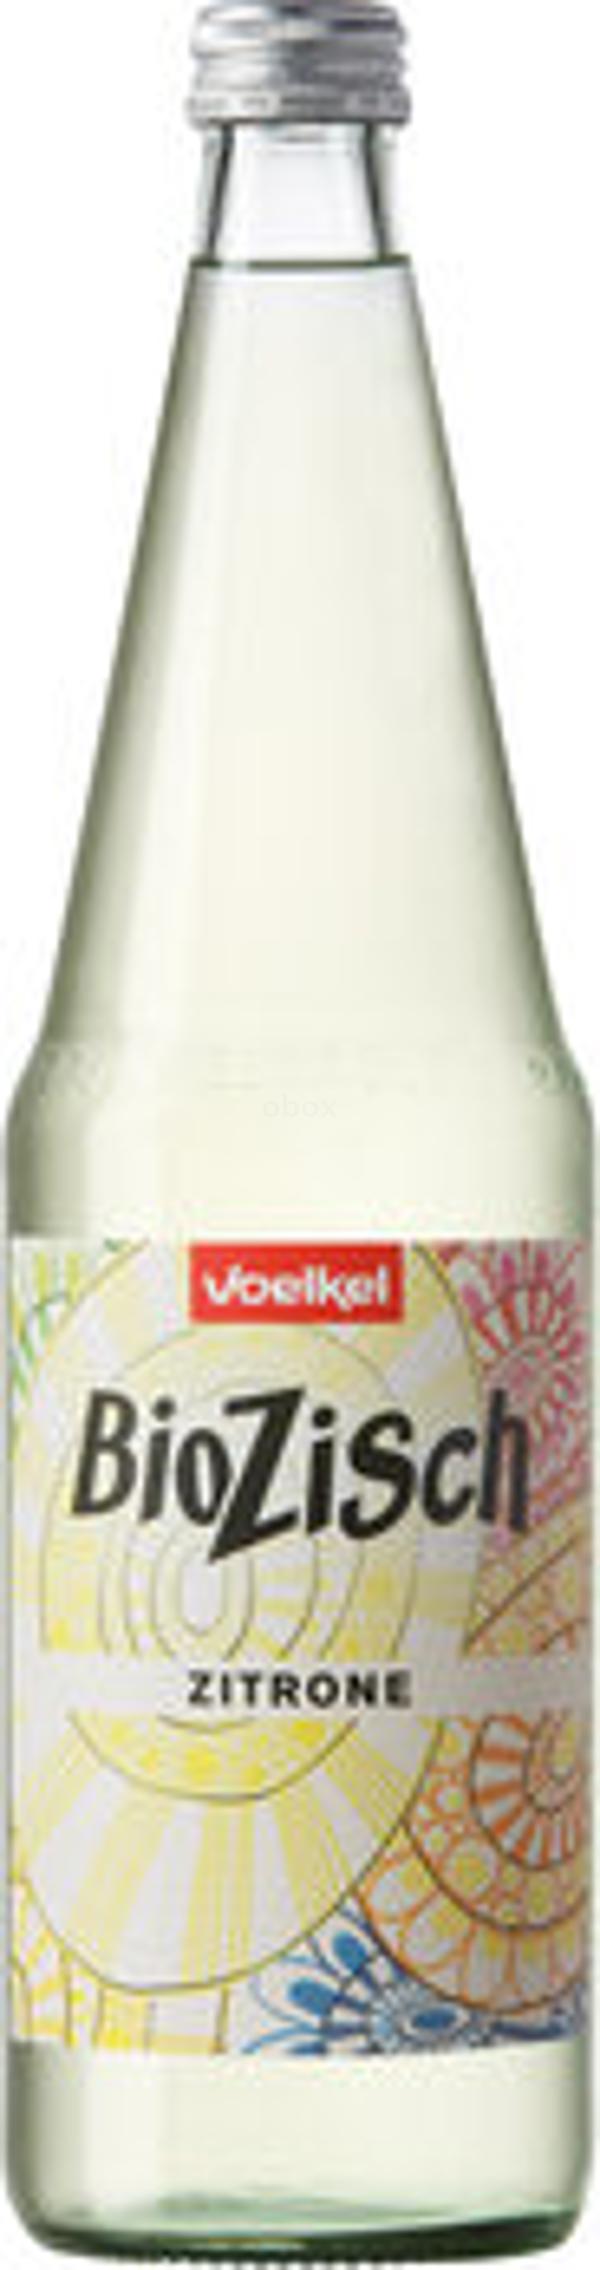 Produktfoto zu BioZisch Zitrone Kiste 6*0,7L